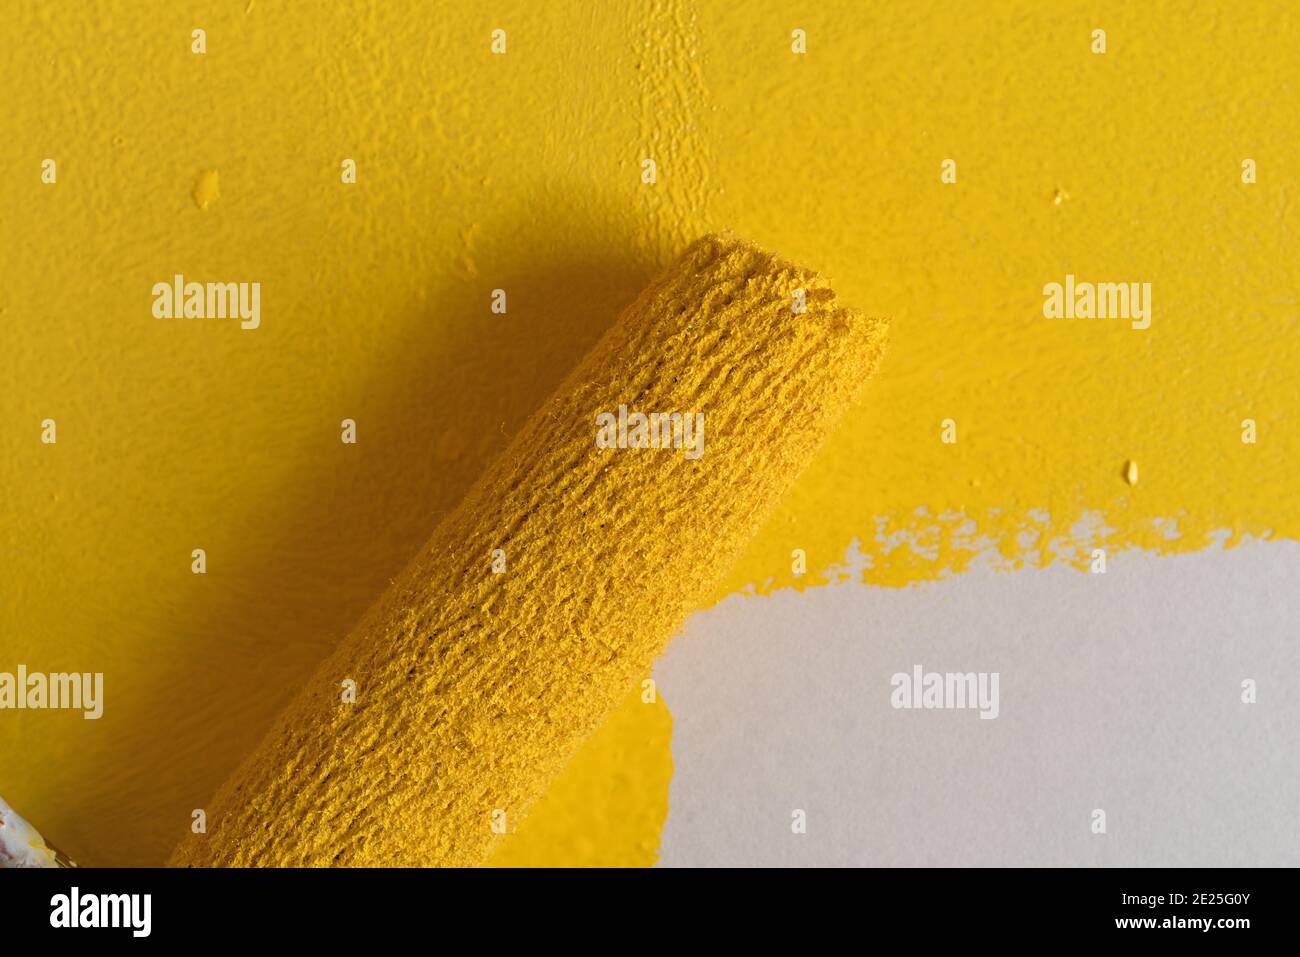 Utilizzando un piccolo rullo, verniciare la vernice gialla su una superficie illuminata da luce del finestrino. Foto Stock